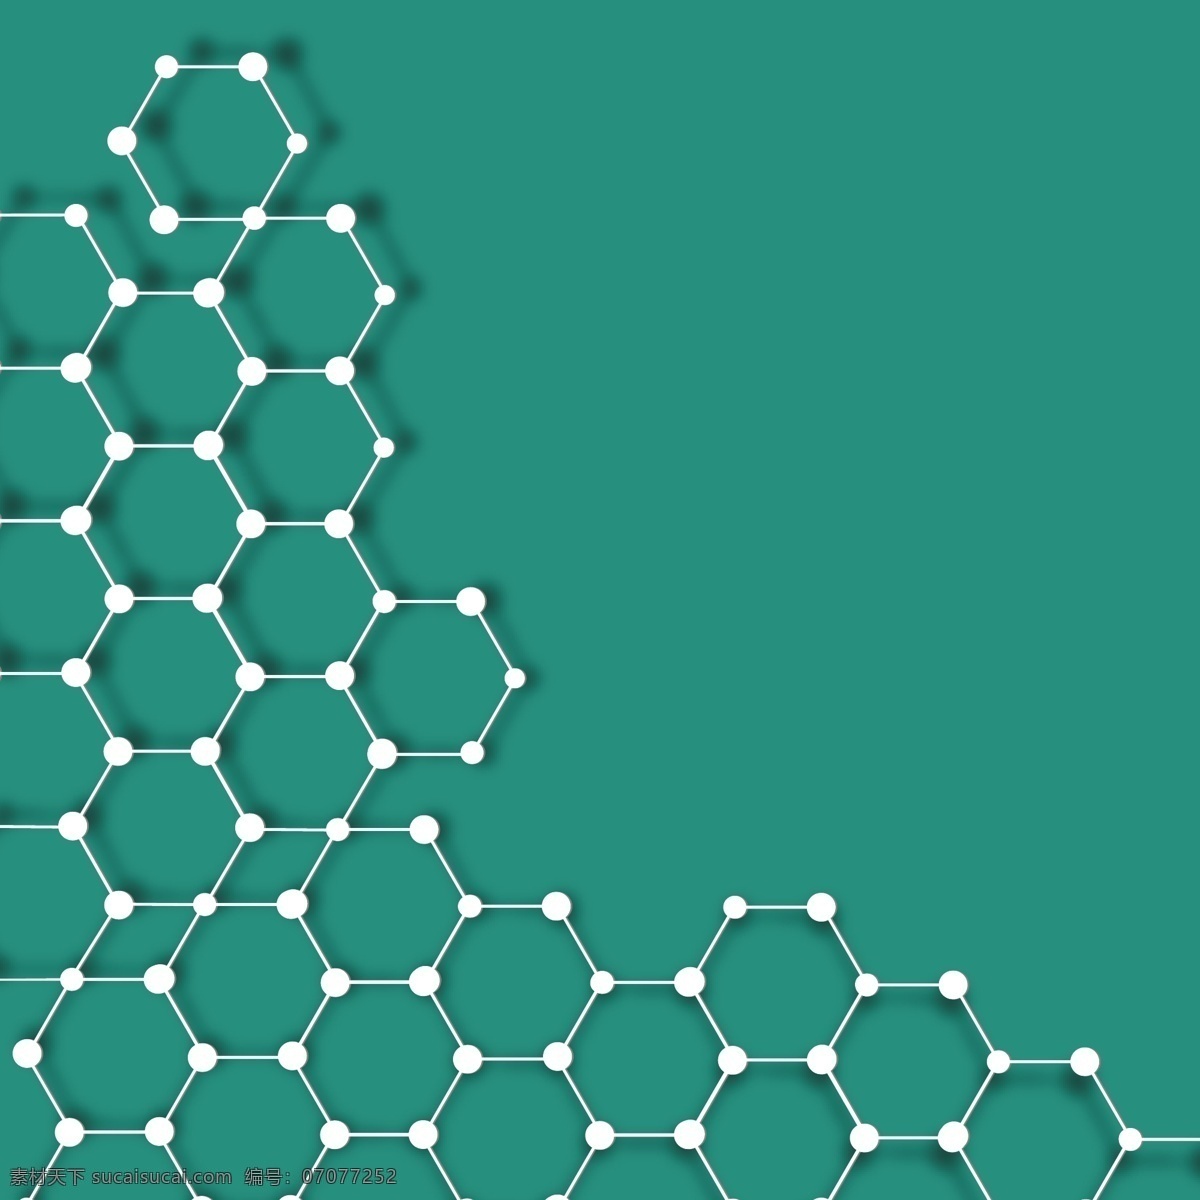 分子式背景 结构式 分子式 科学概念 科学图标 科技图标 化学 物理 科技背景 办公学习 生活百科 矢量素材 青色 天蓝色